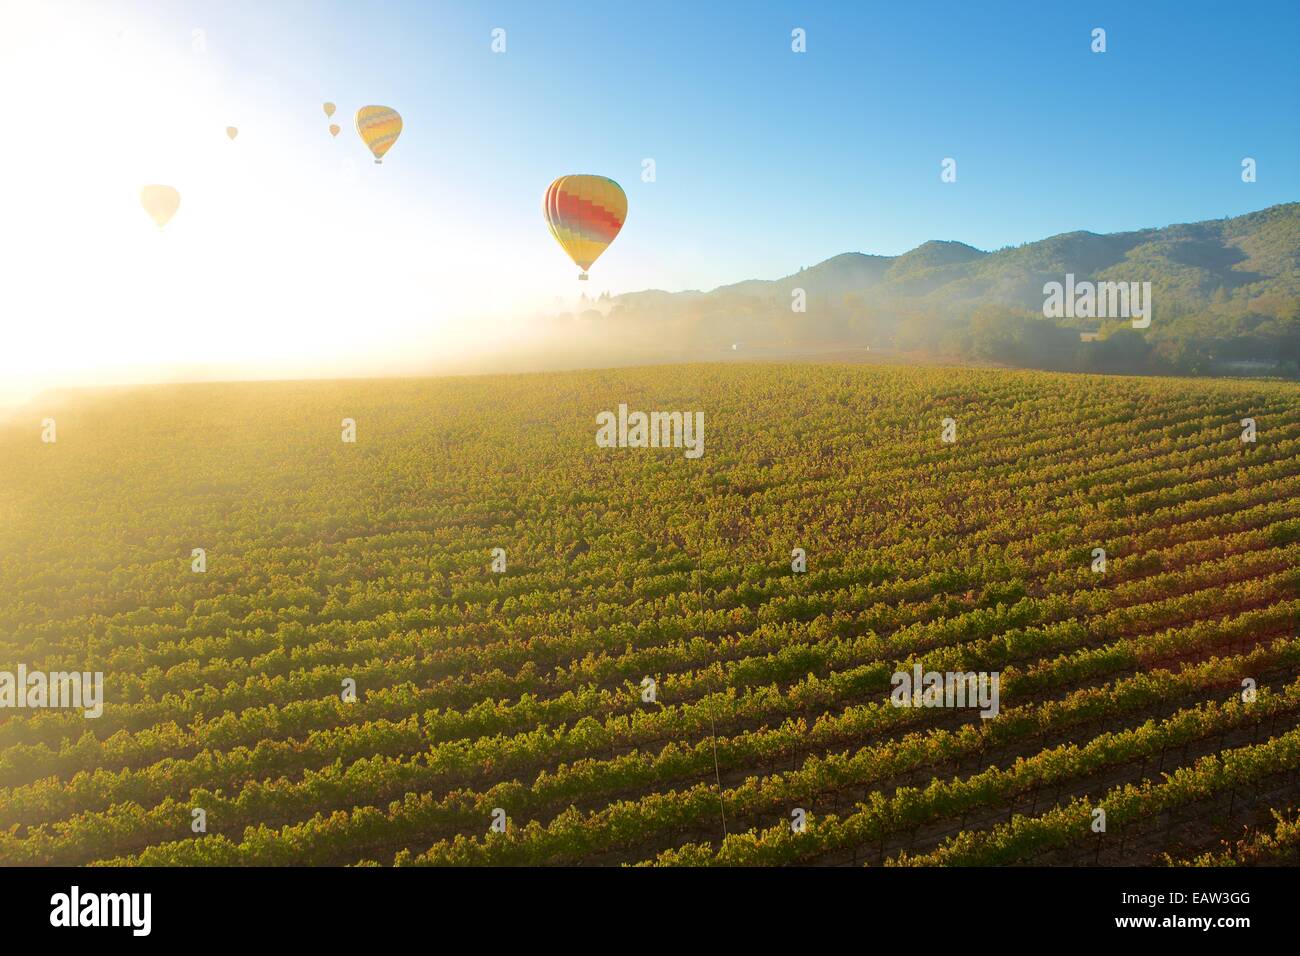 Heißluftballon im berühmten Weingebiet Napa Valley, Kalifornien. Stockfoto